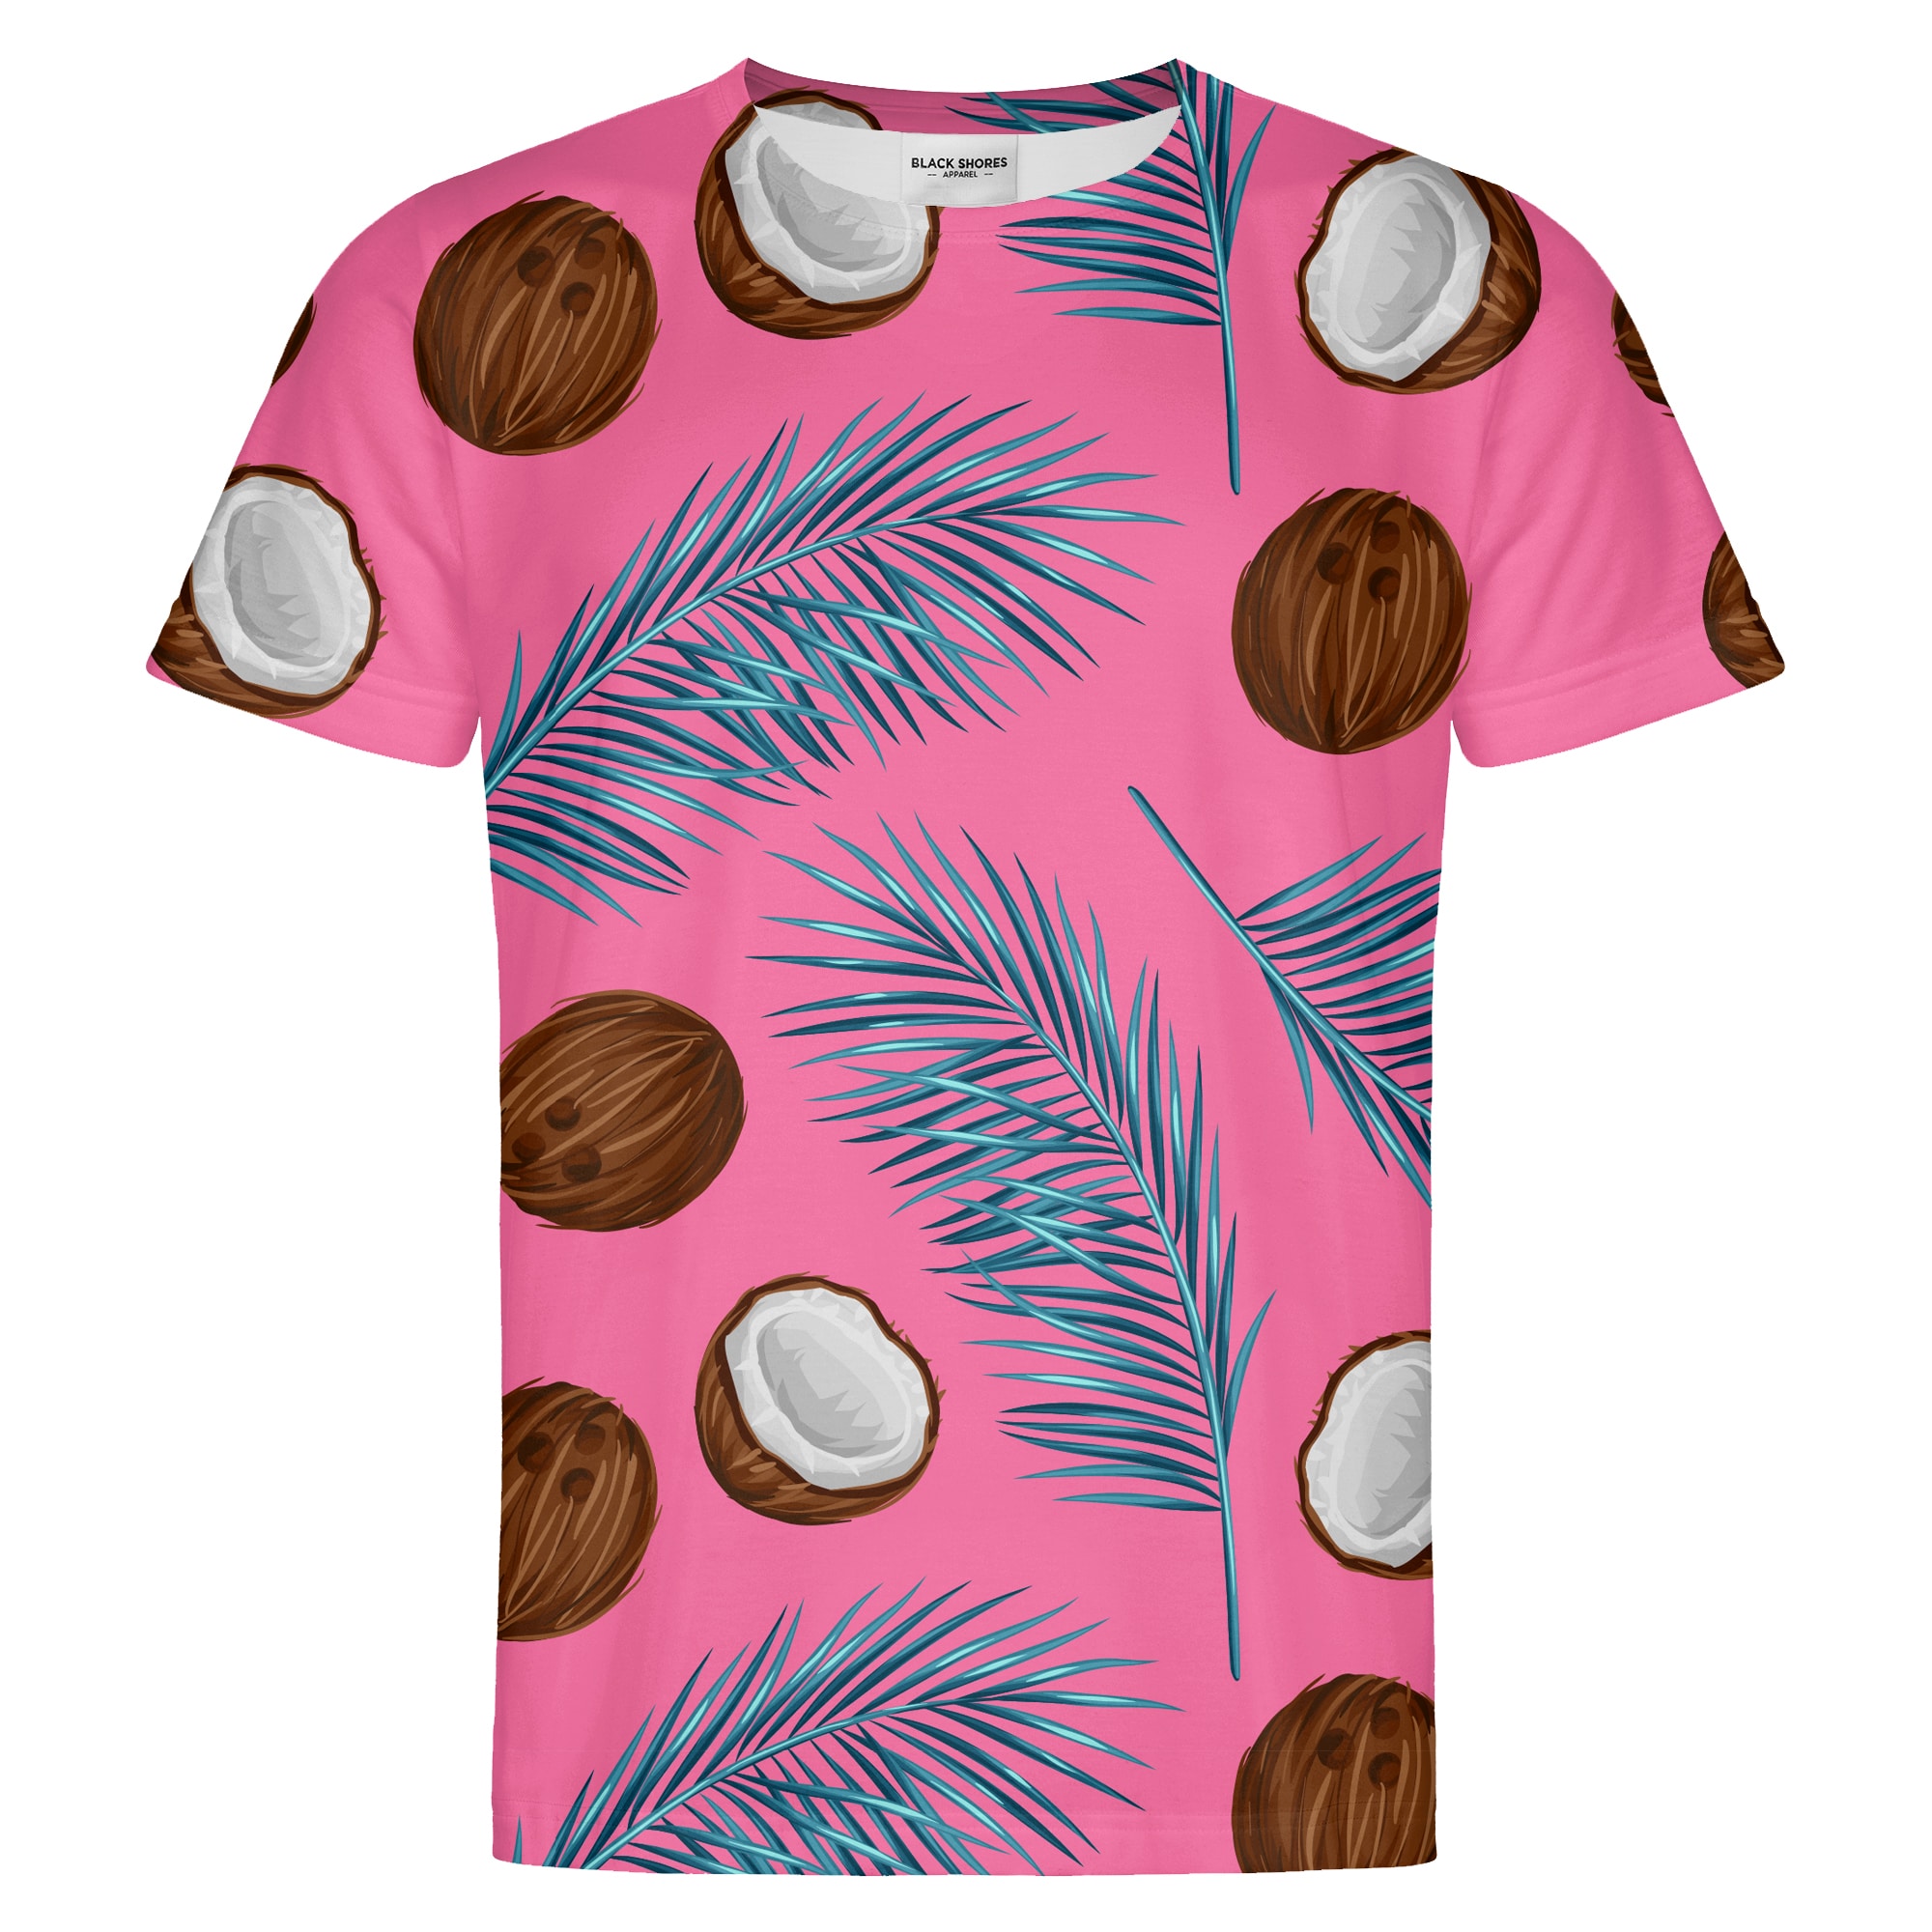 E-shop Coconuts T-shirt – Black Shores